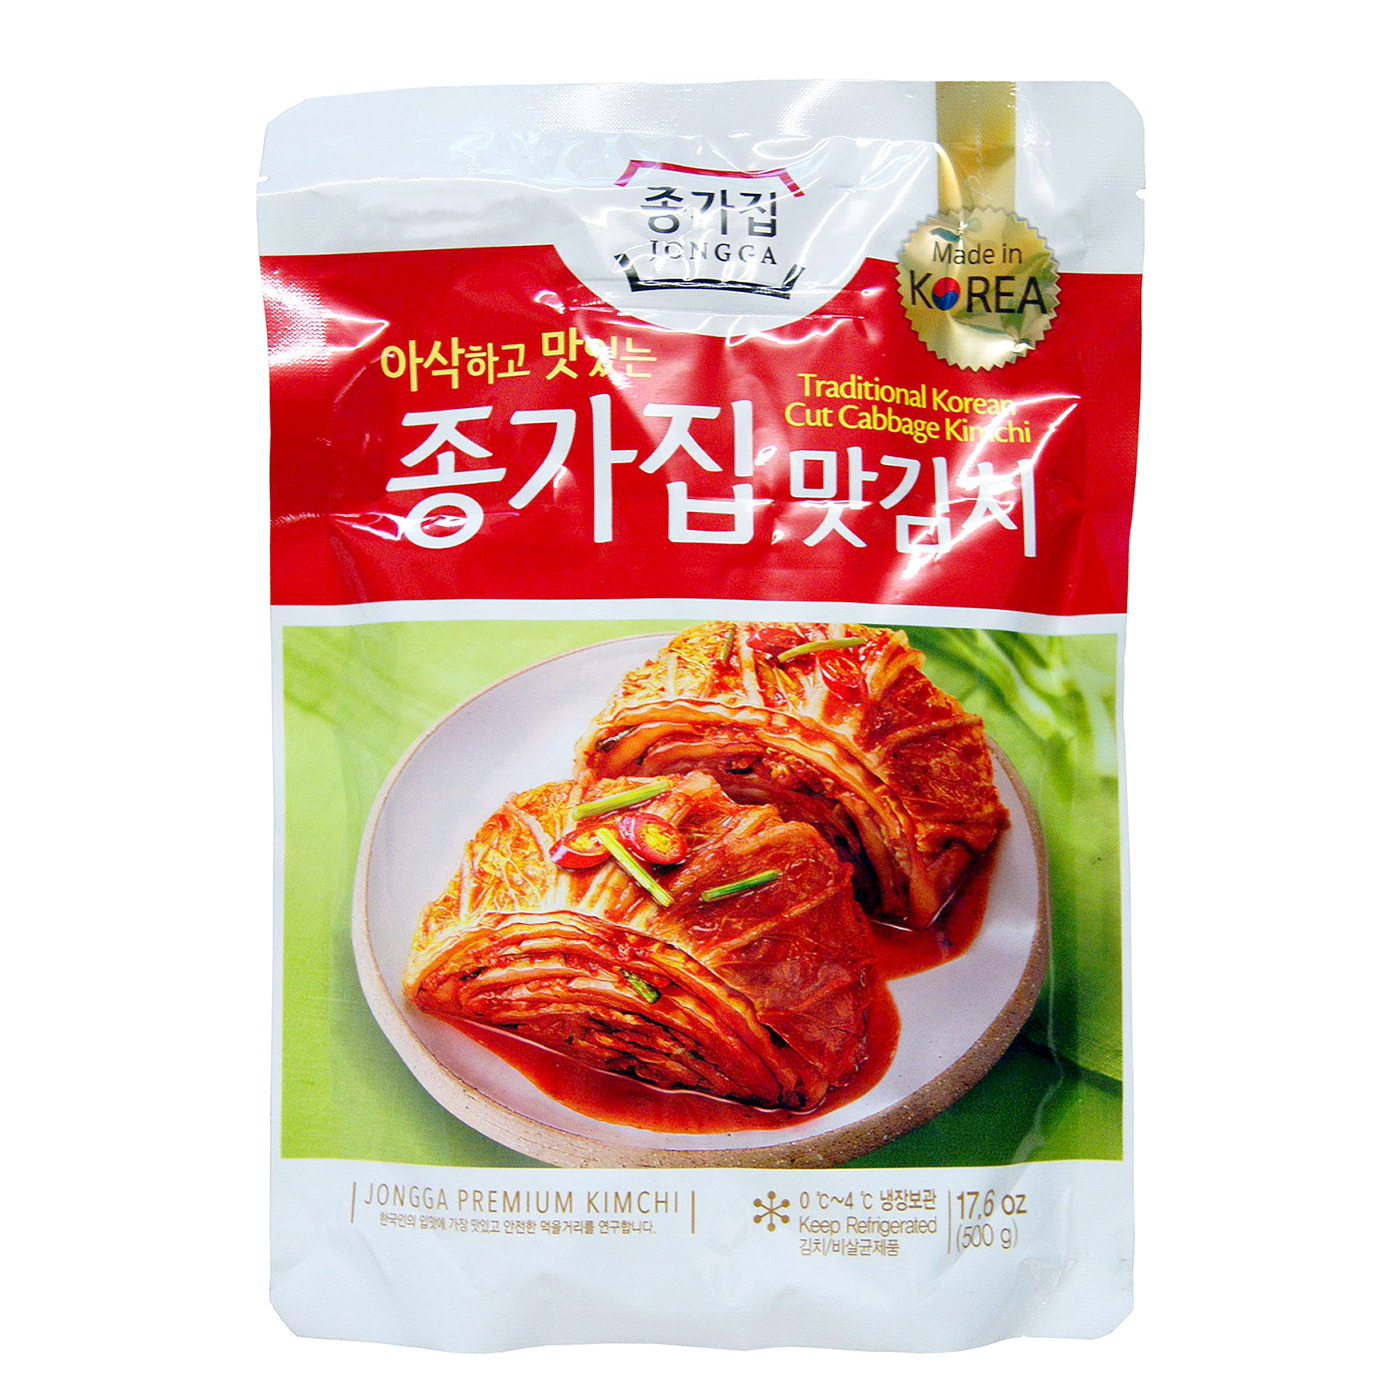 Exclusiv in magazine - Kimchi taiat Jongga 500g, asianfood.ro